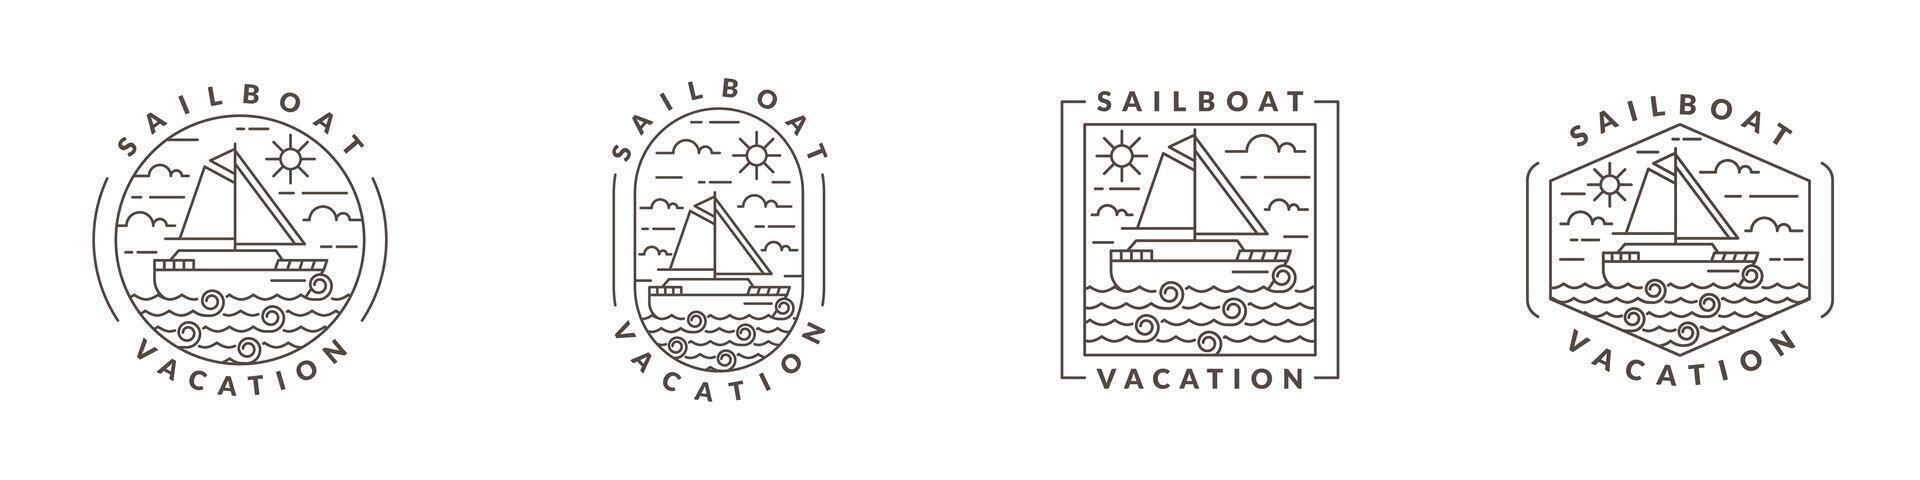 ilustração do barco a vela e oceano monoline ou linha arte estilo vetor